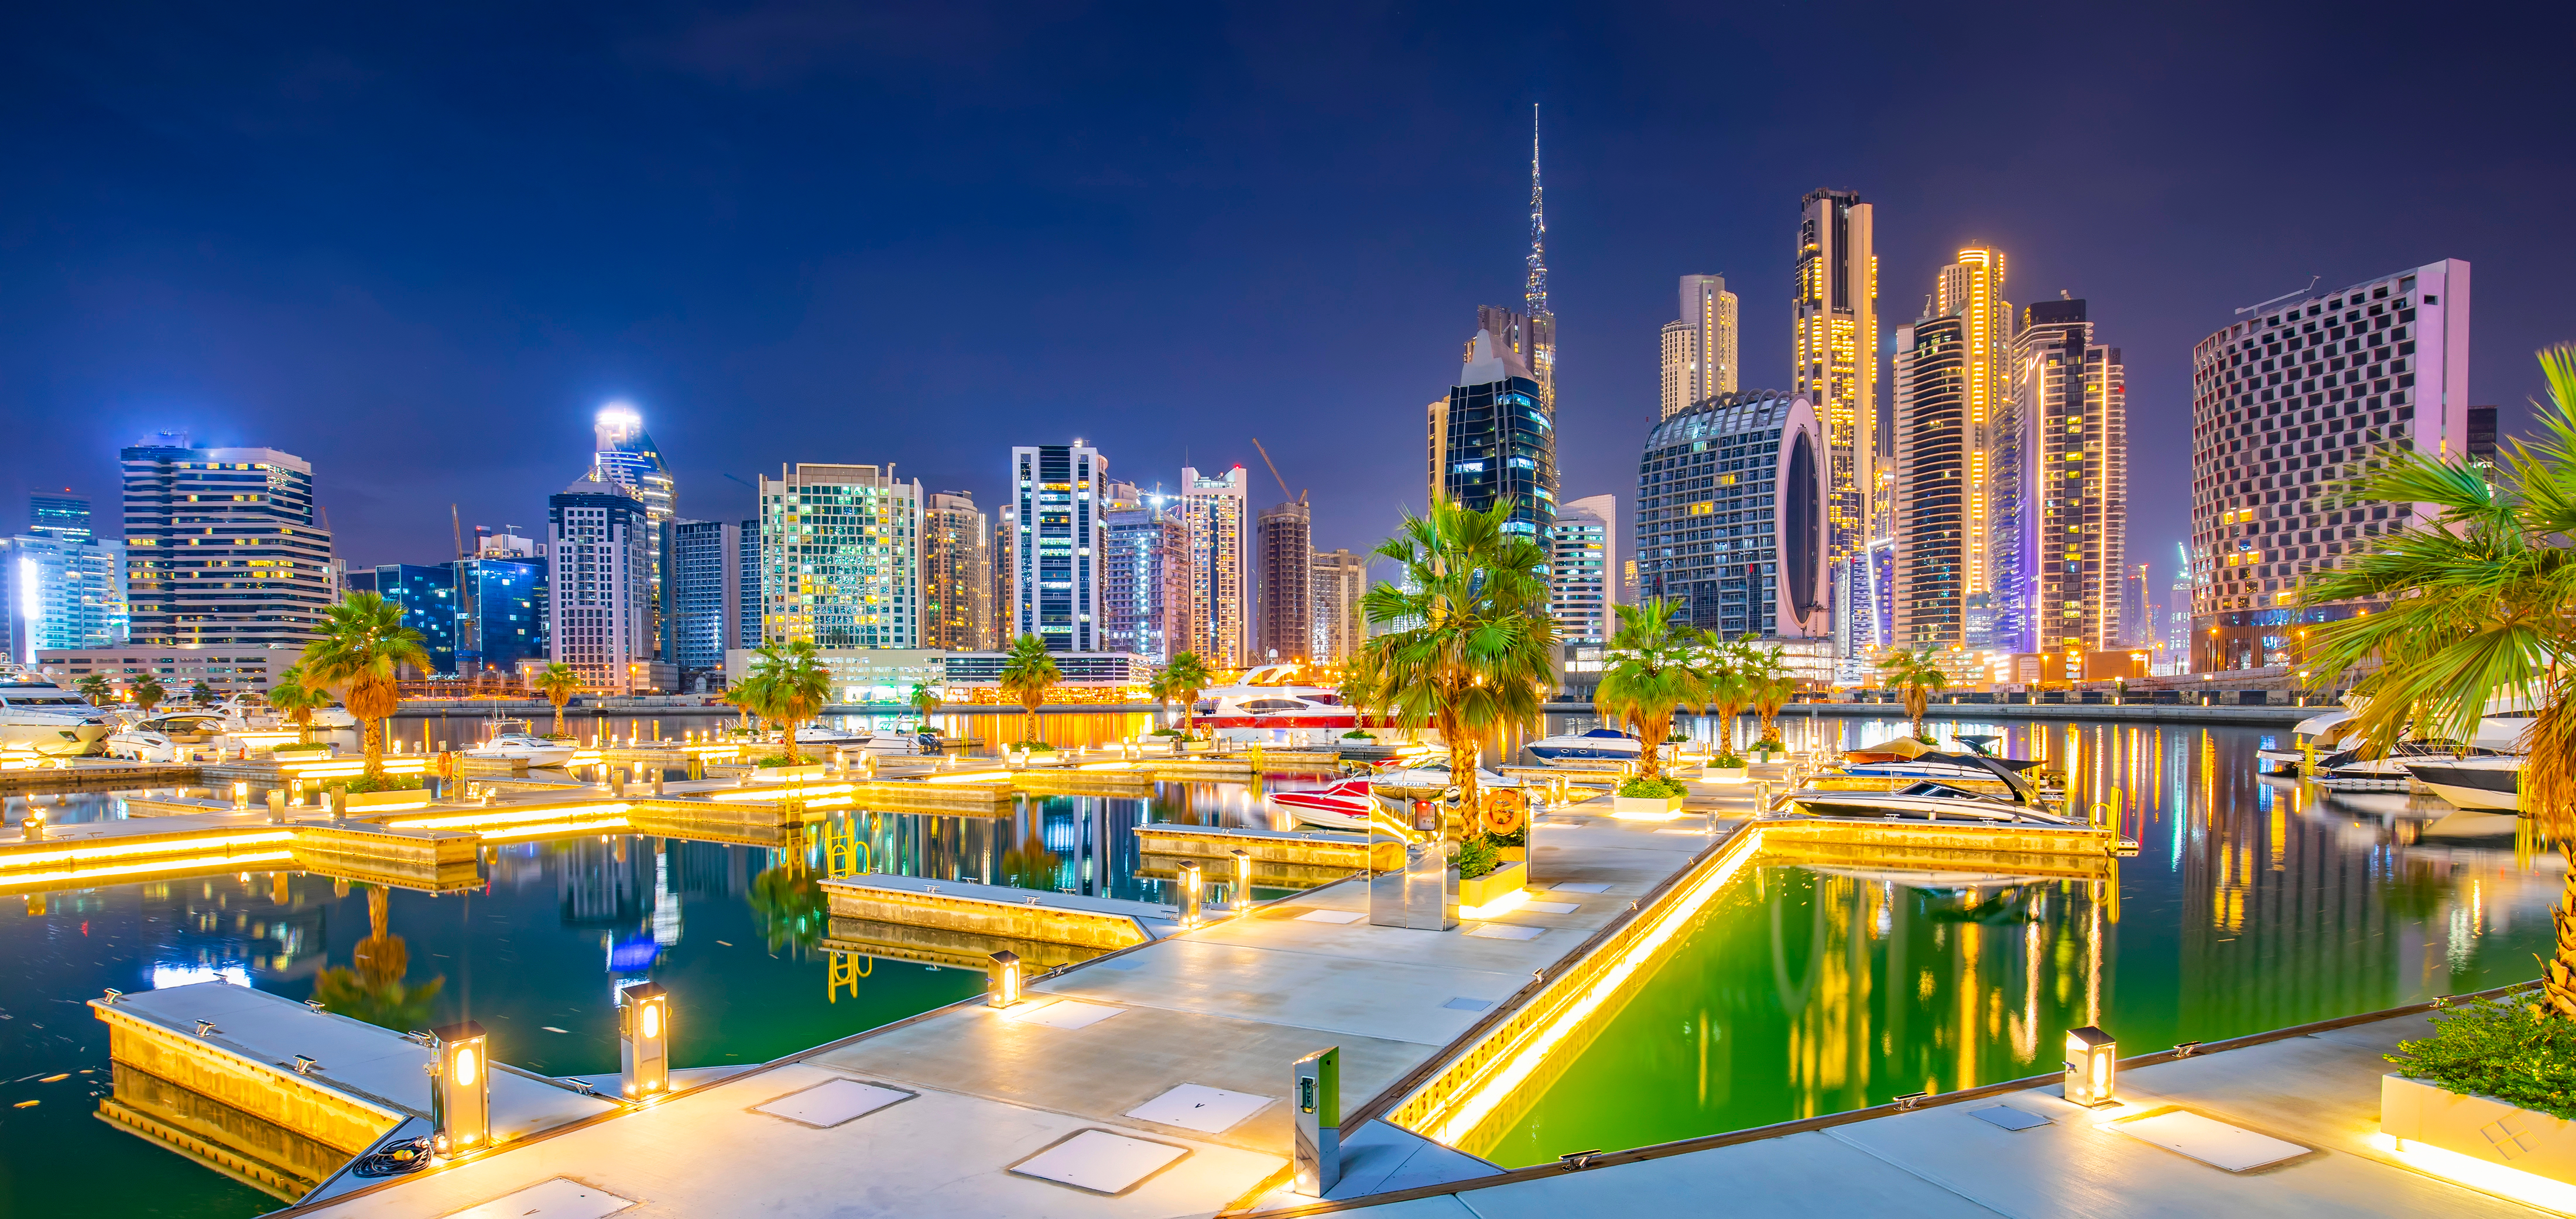 Dubai named ‘world’s fifth best city’ for 2023